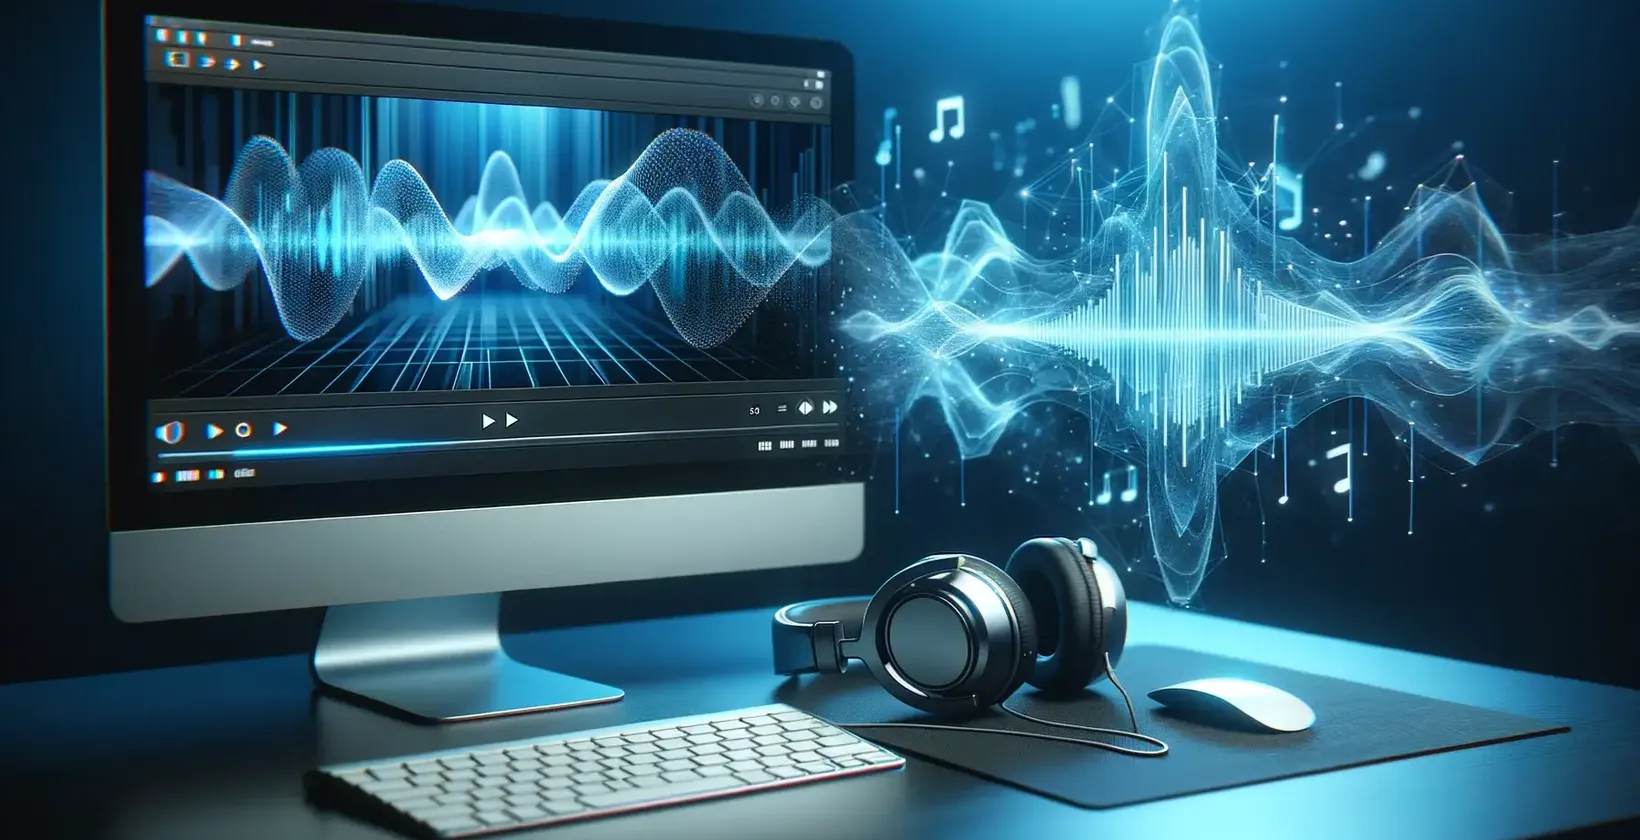 برنامج نسخ صوتي متقدم يمثله شاشة مزودة بأشكال موجية صوتية وسماعات رأس